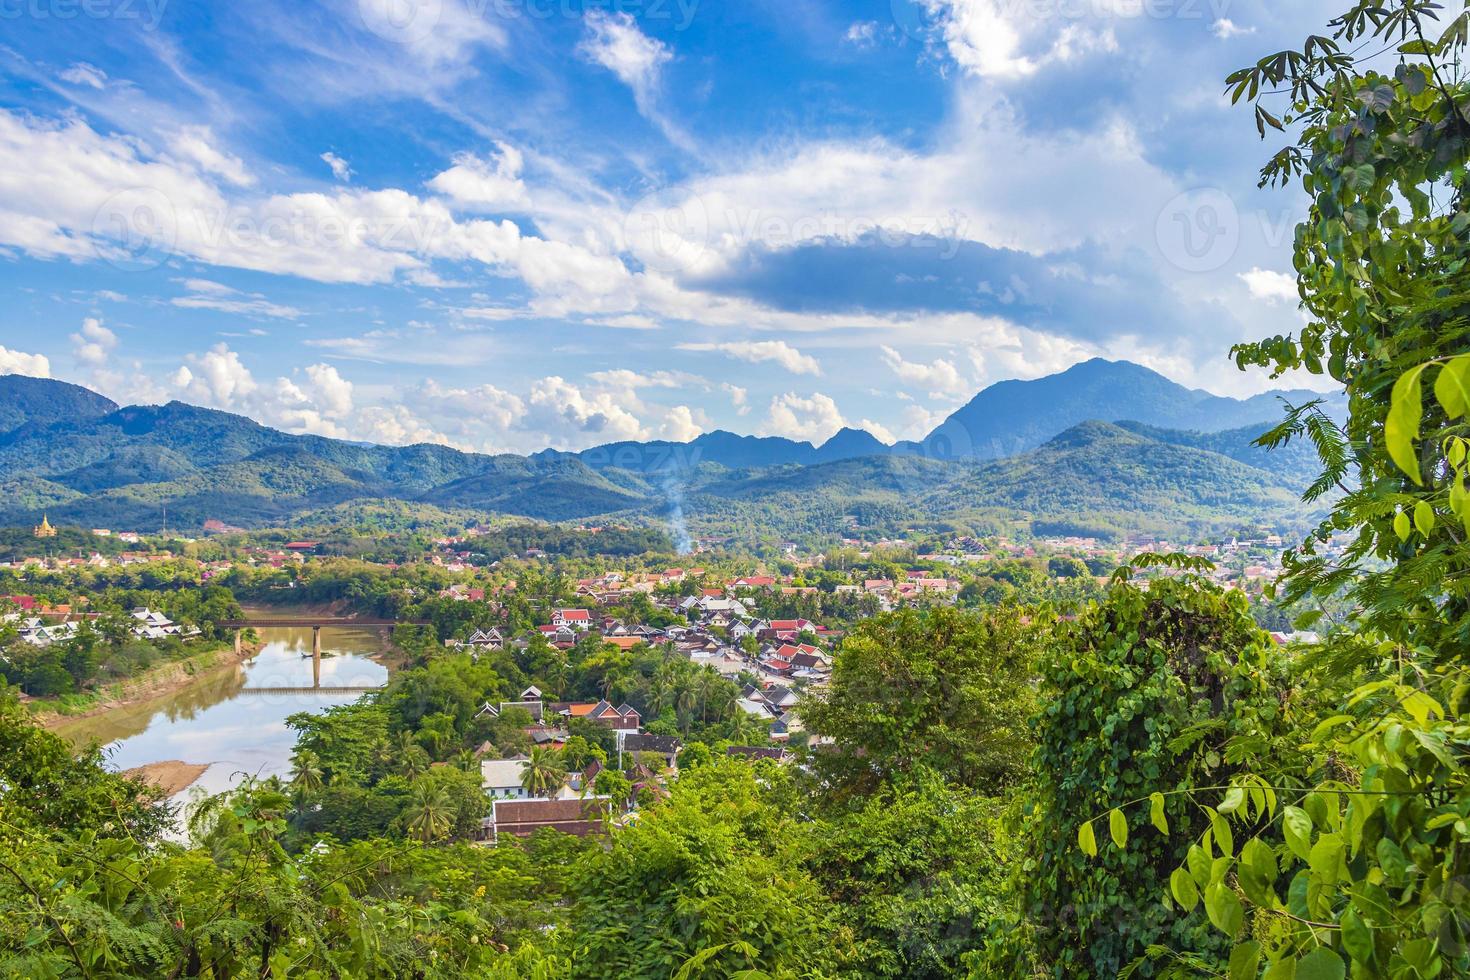 città di luang prabang in laos panorama del paesaggio con il fiume mekong. foto